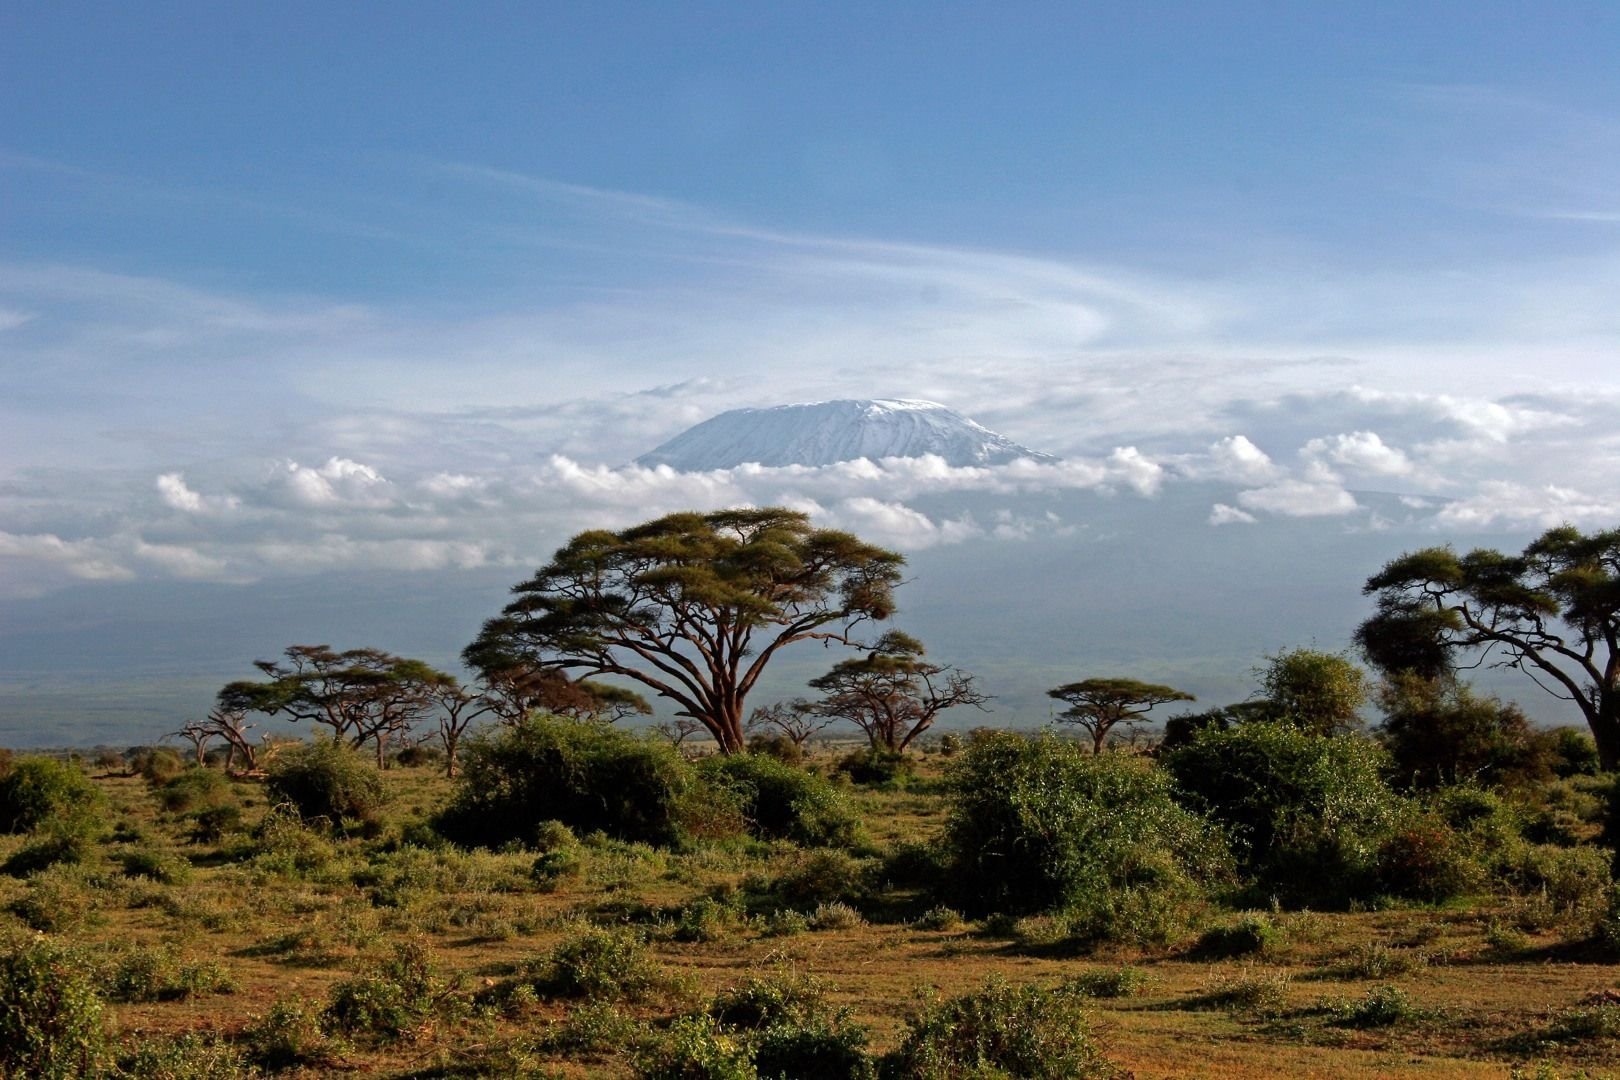 Растения восточной африки. Национальный парк Амбосели Кения. Национальный парк Килиманджаро в Африке. Национальный парк Килиманджаро в Танзании. Саванна Килиманджаро.